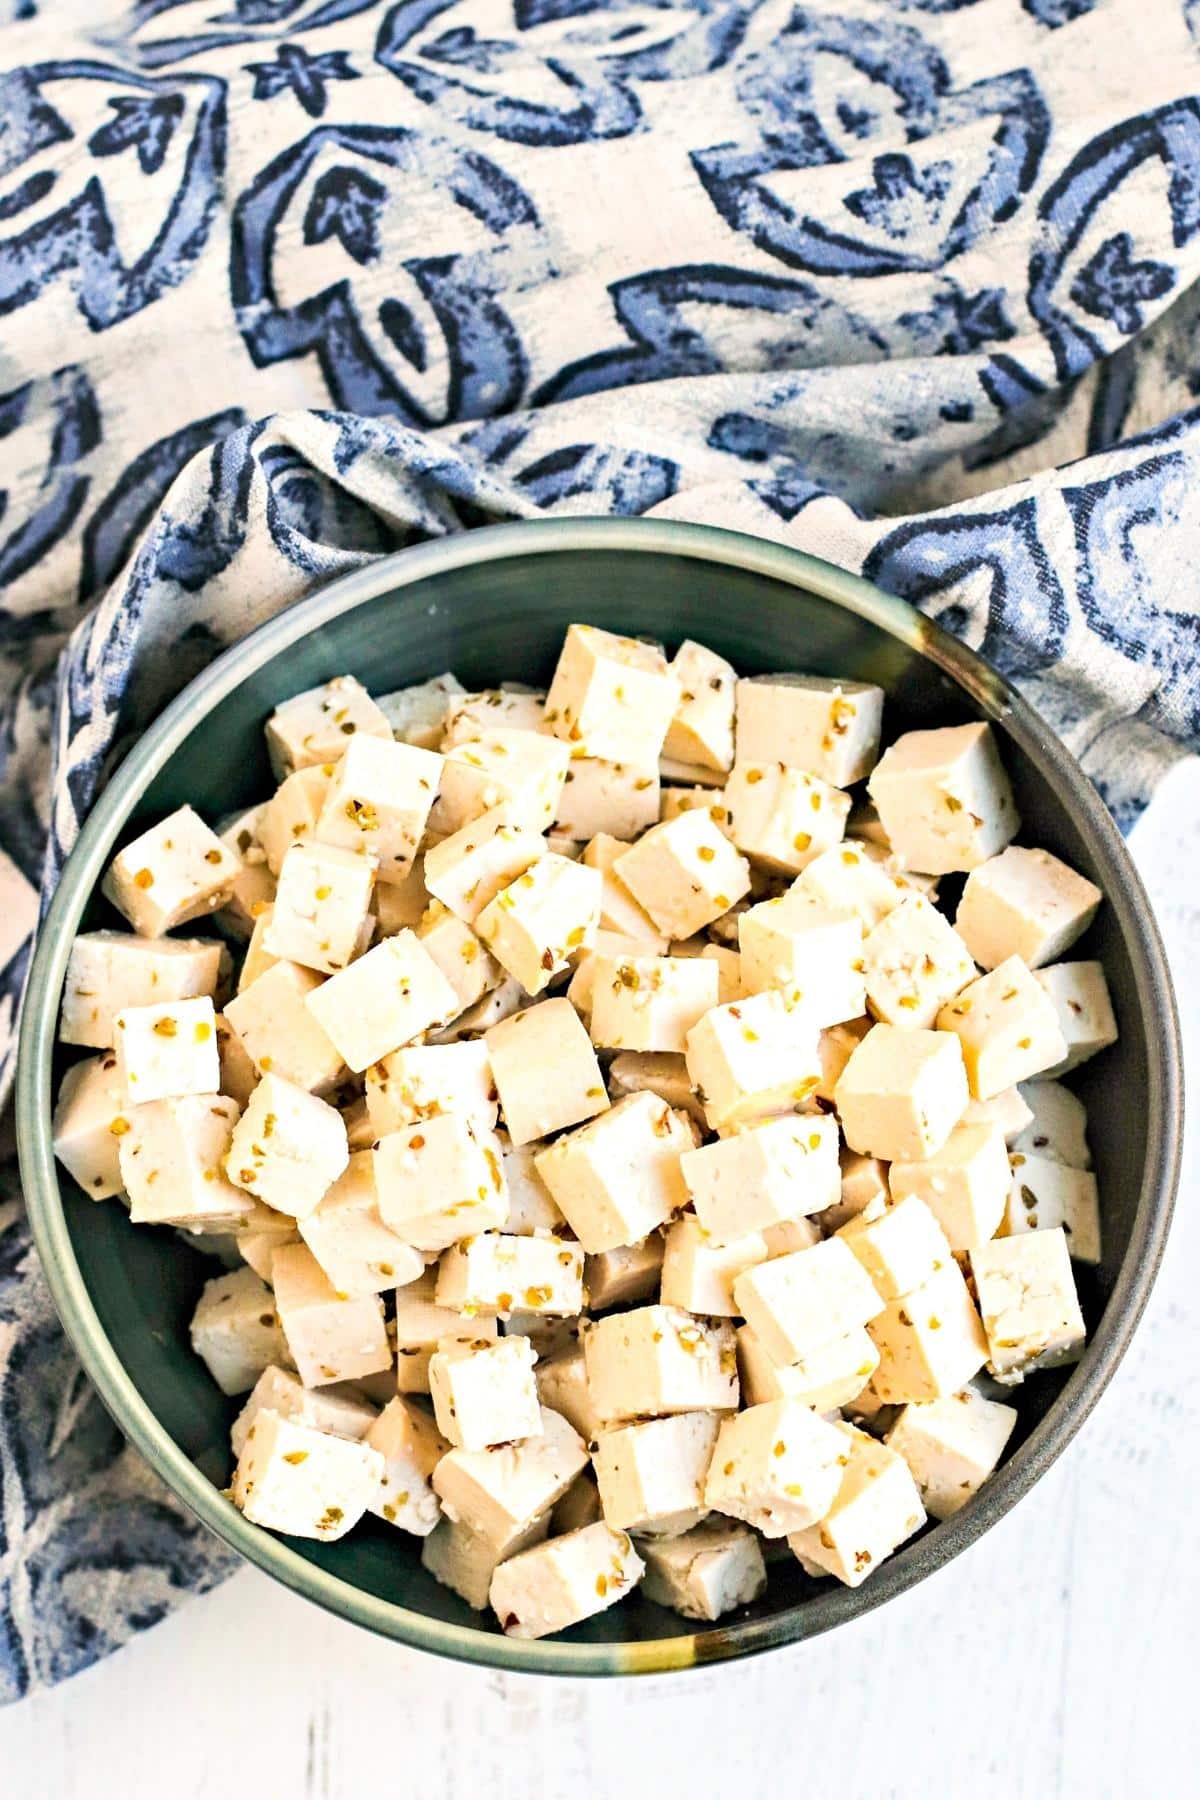 Bowl of tofu feta next to blue and white napkin.